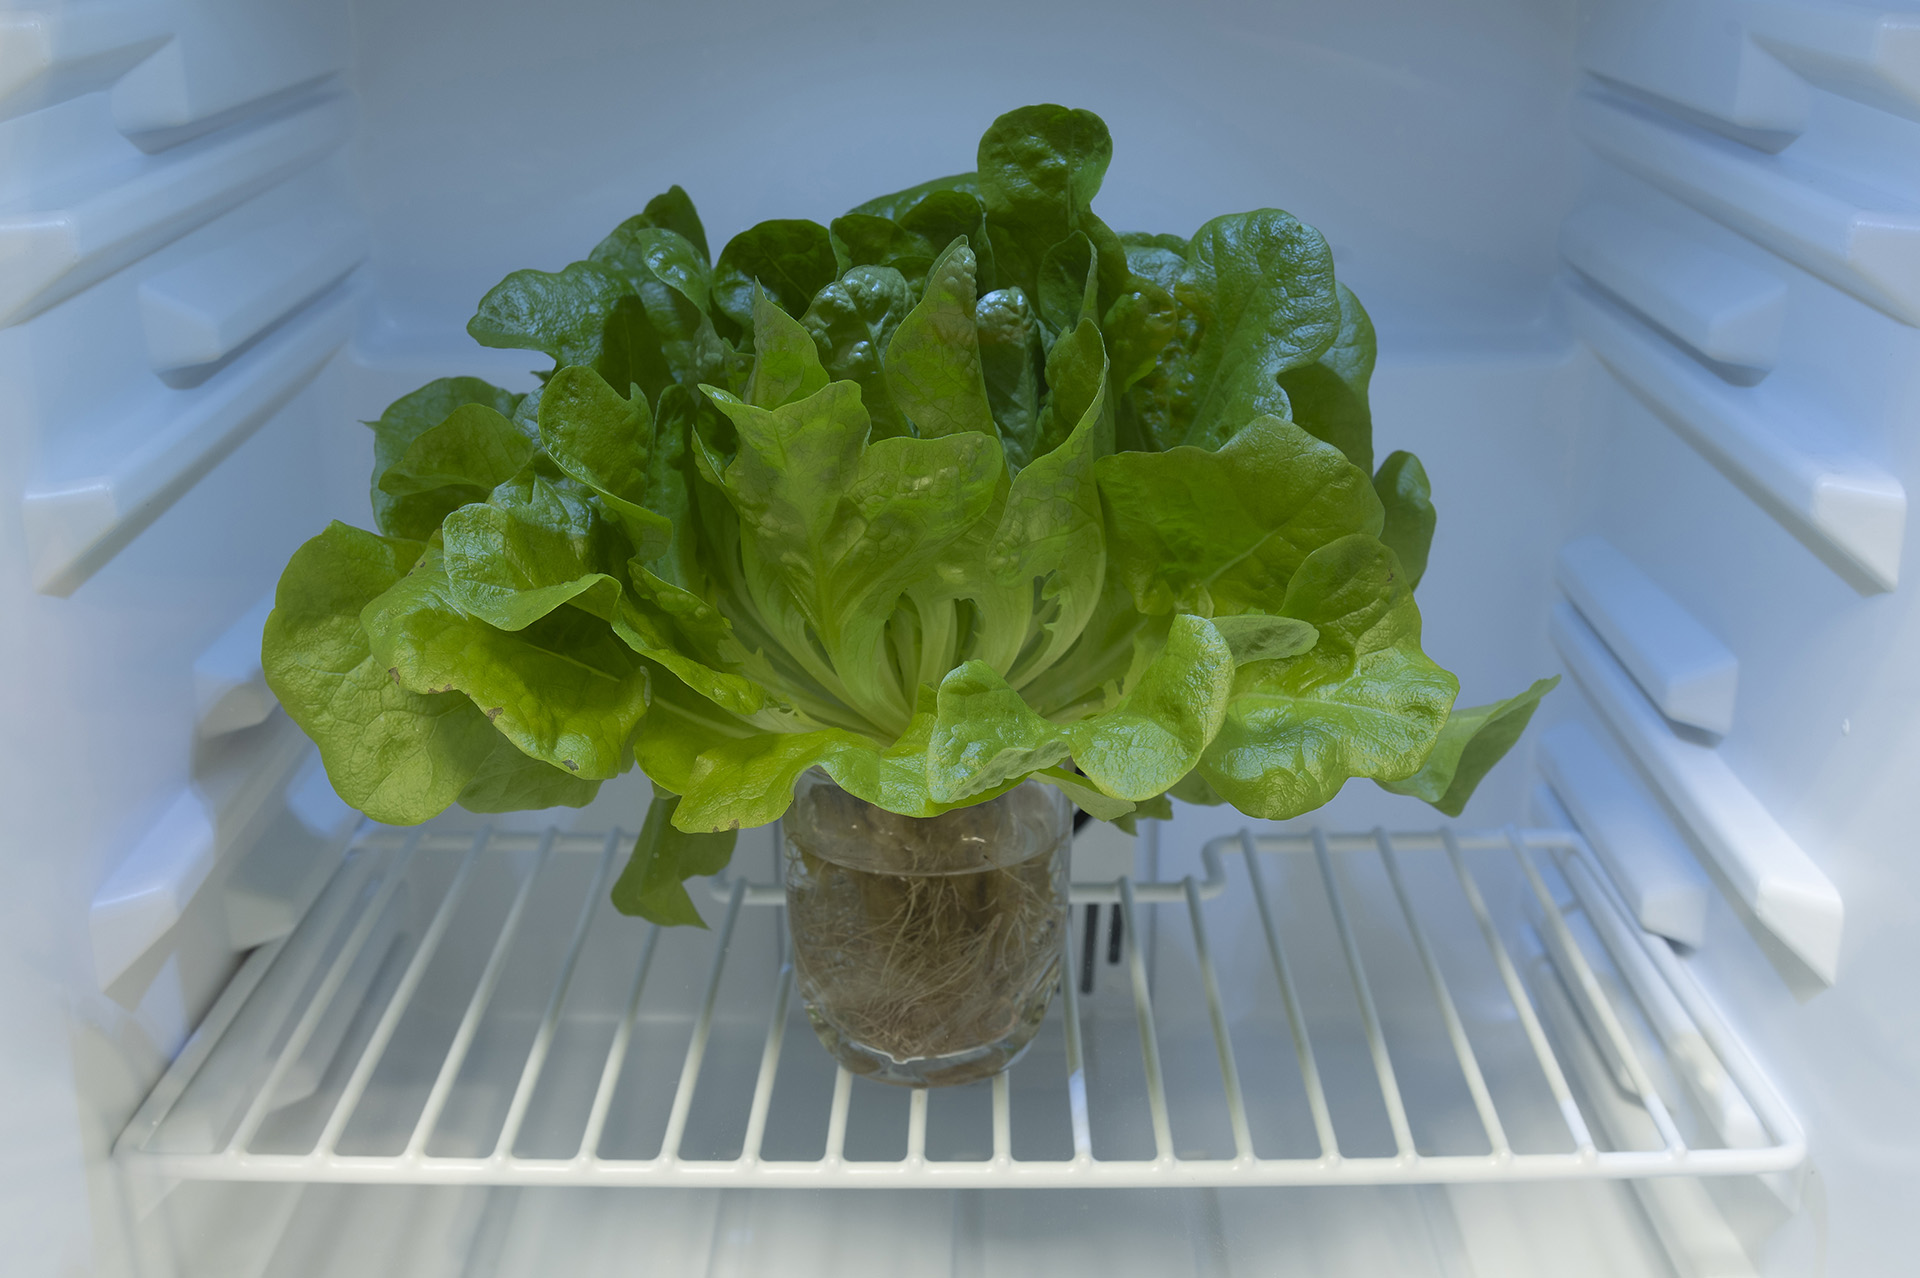 Náš aquaponický salát je živý. Vydrží svěží až 22 krát déle